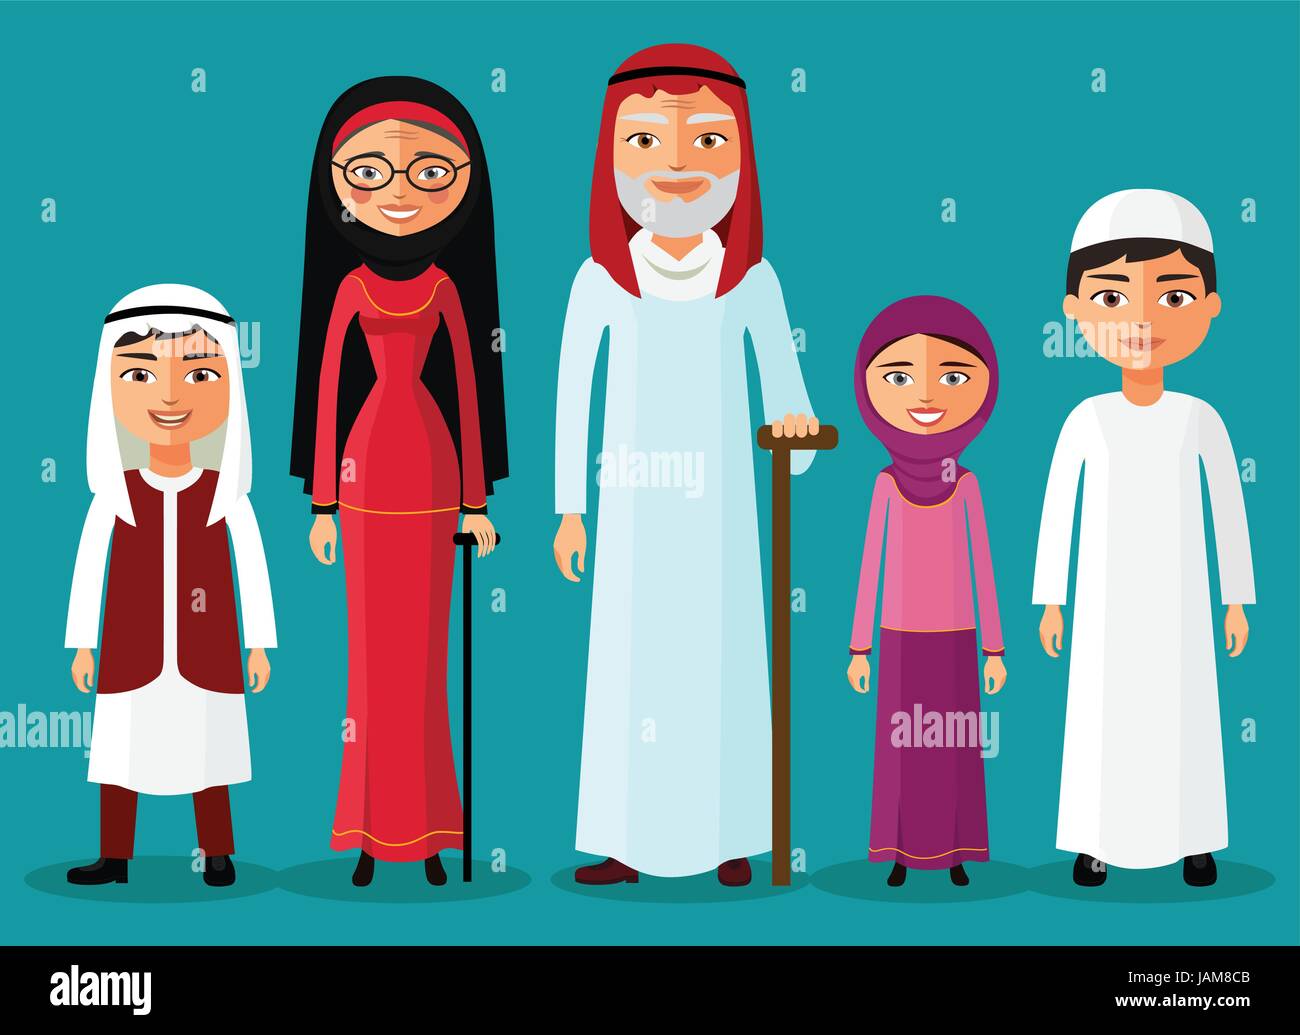 Arabische Großeltern mit Enkeln zusammen in einem flachen Stil. Enkelin, Opa, Oma und Enkel. Arabische alte Menschen. Vektor-Illustration. Stock Vektor